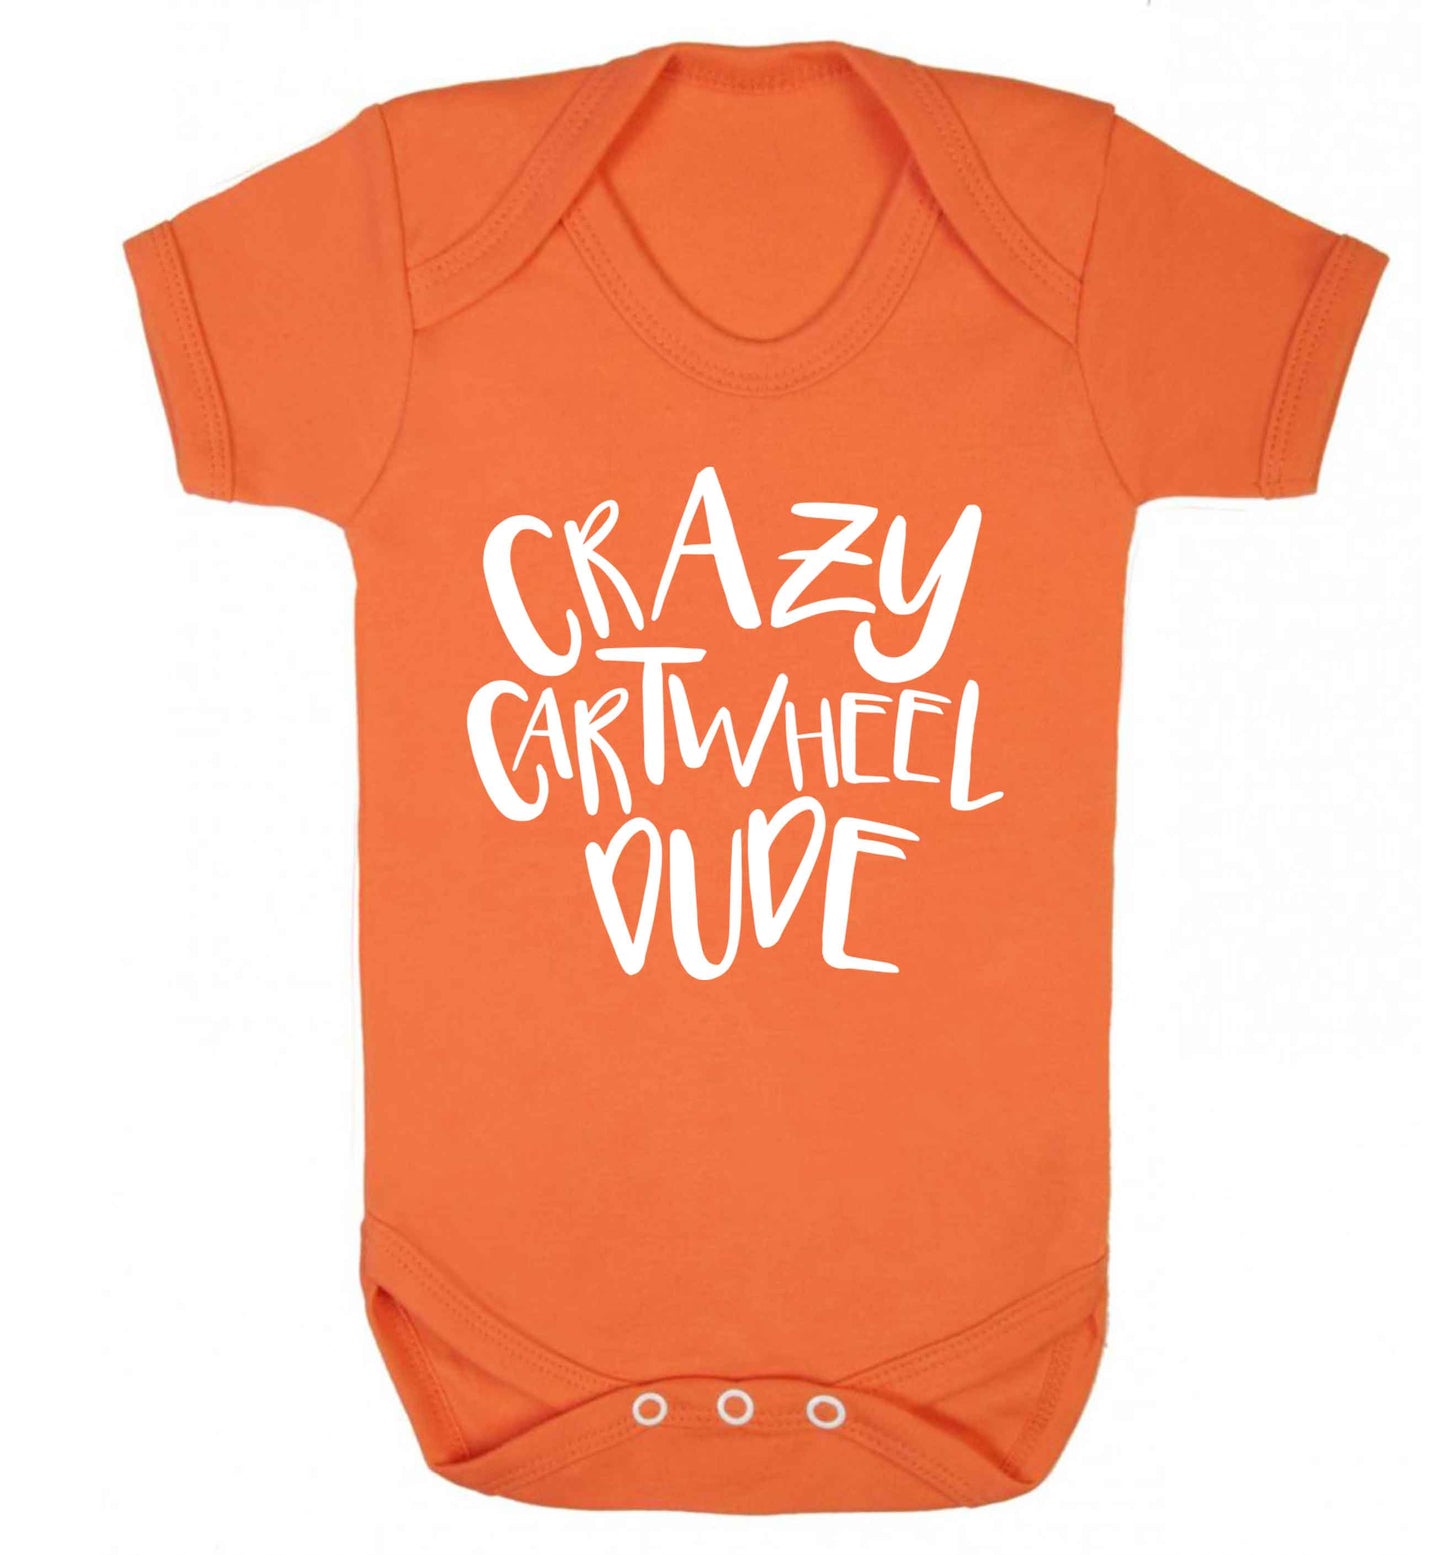 Crazy cartwheel dude Baby Vest orange 18-24 months